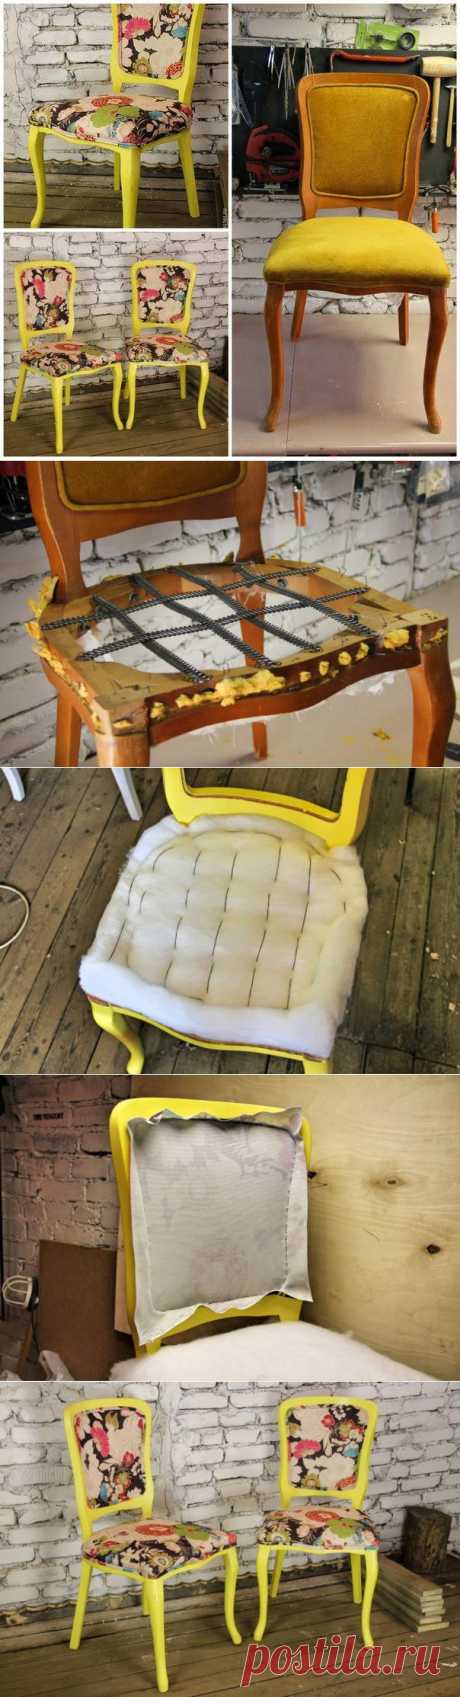 Как заменить обивку и покрасить стулья